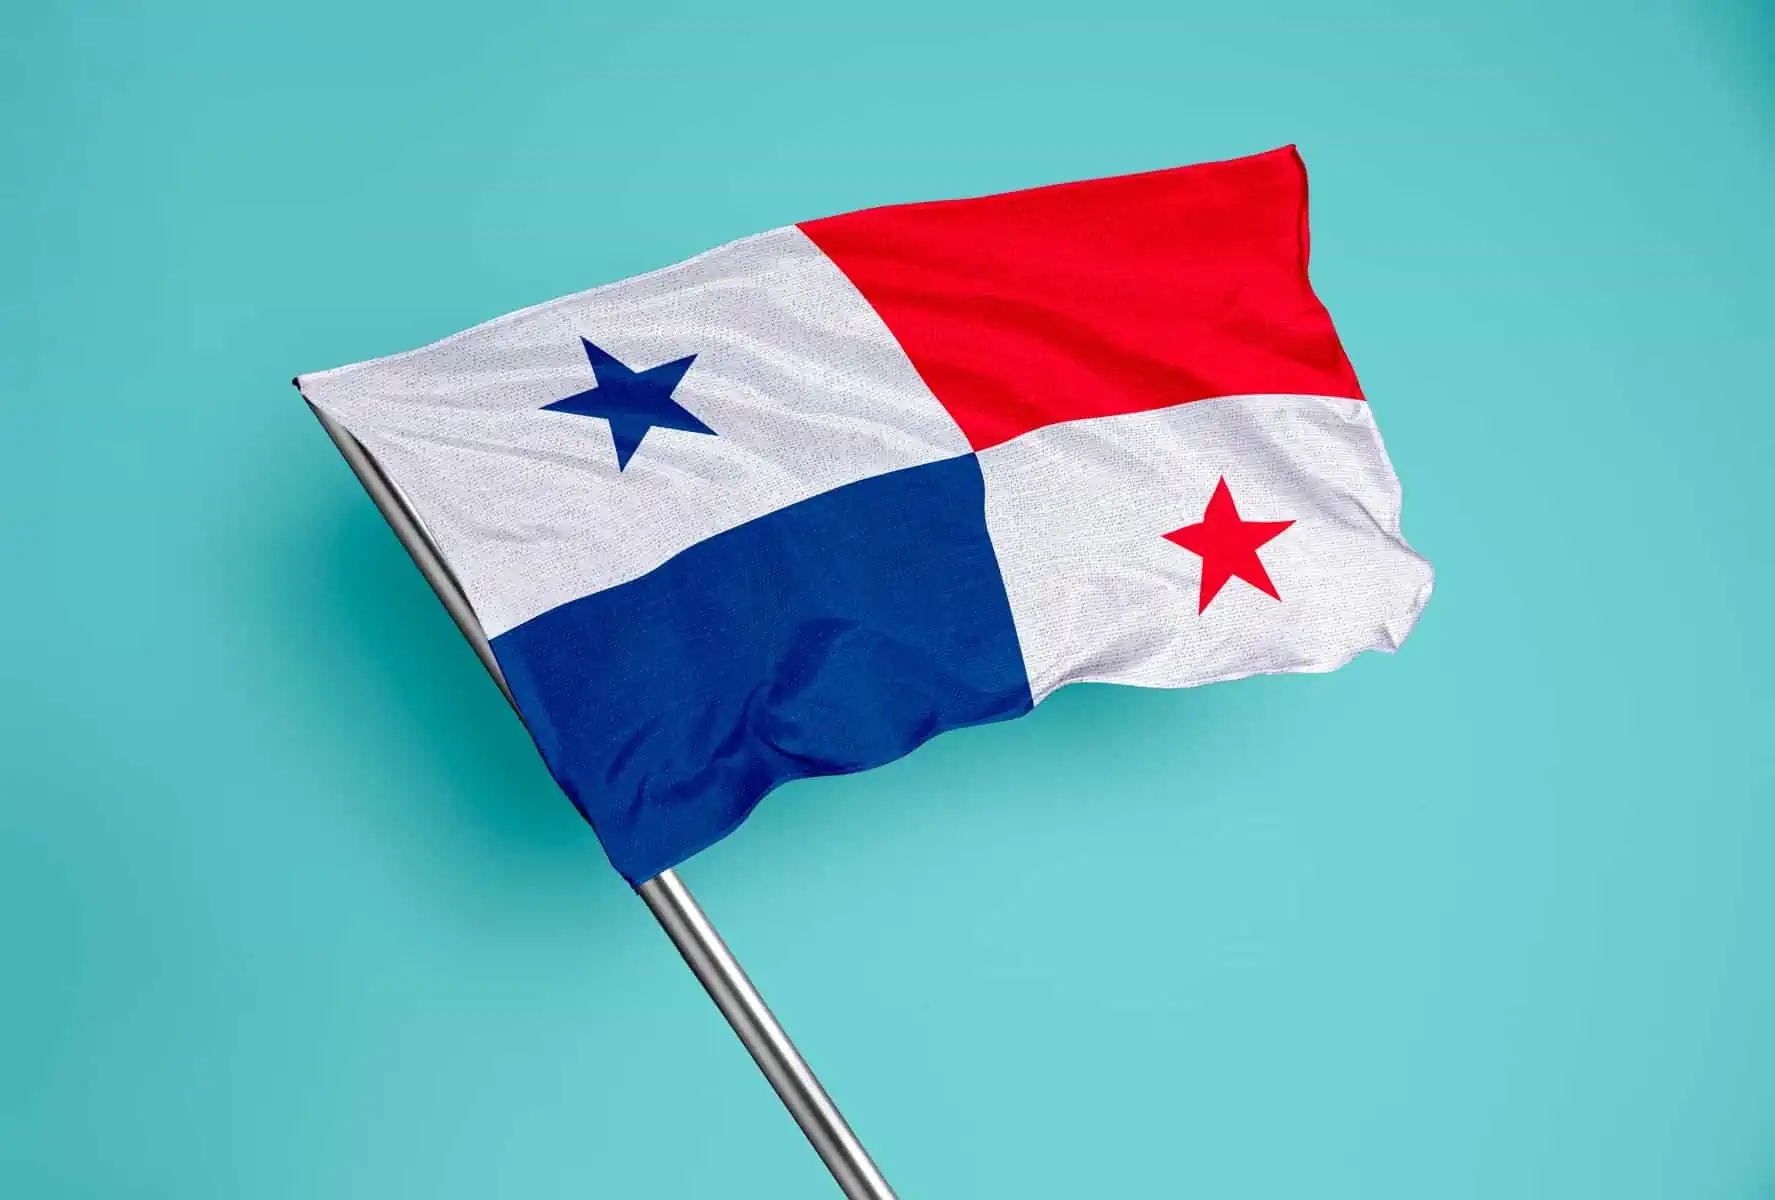 Consulado de Panama en Cuba Informa Precisiones sobre Tarifas Consulares y Resultados Visa de Transito y Turismo 22 de Mayo